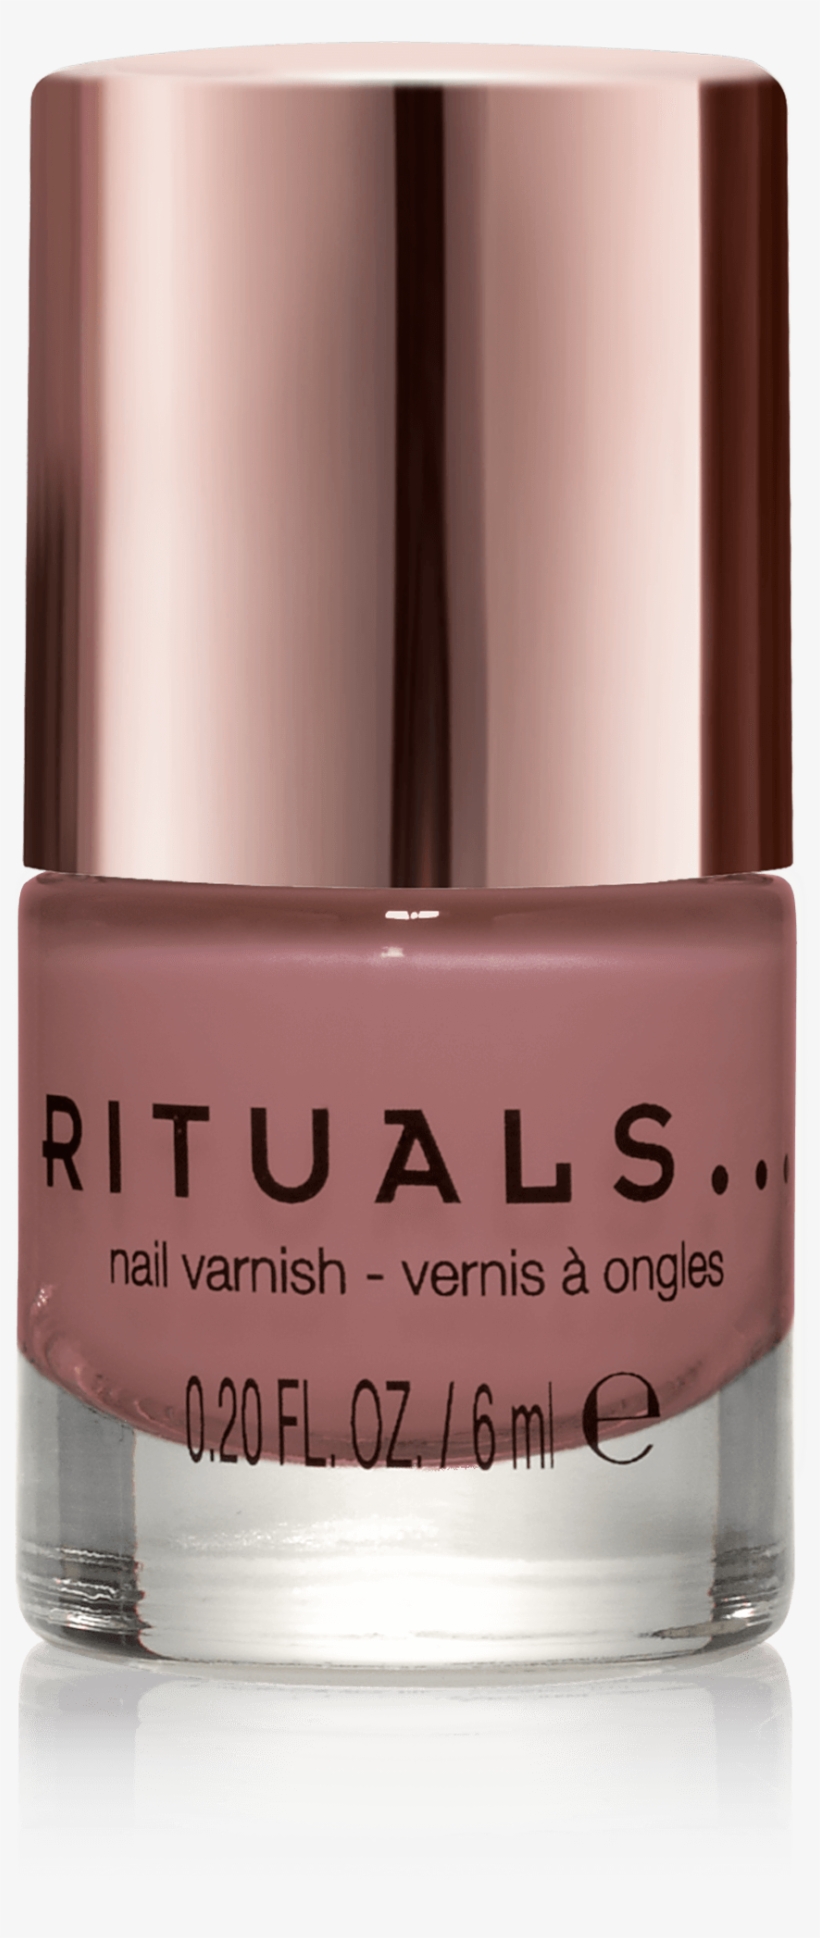 Miracle Nail Varnish Vintage Pink - Rituals Nail Polish - Beige, transparent png #856307